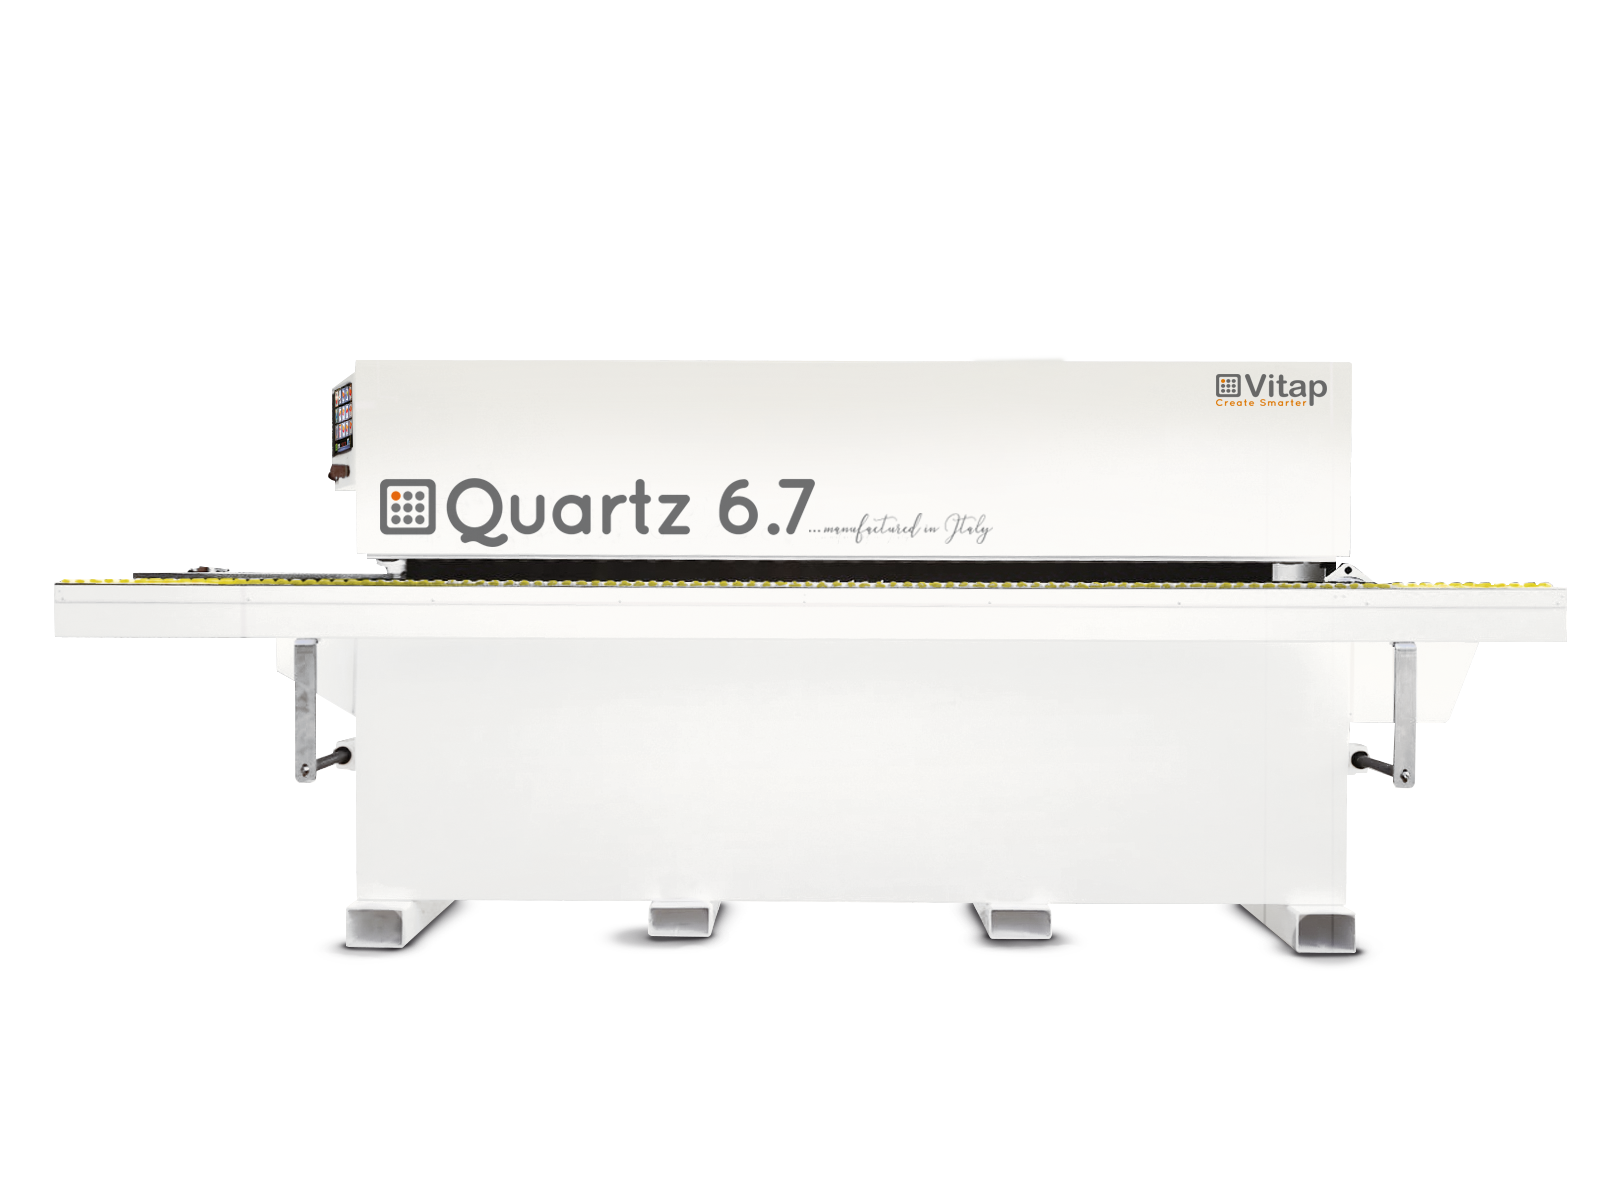 Quartz 6.7